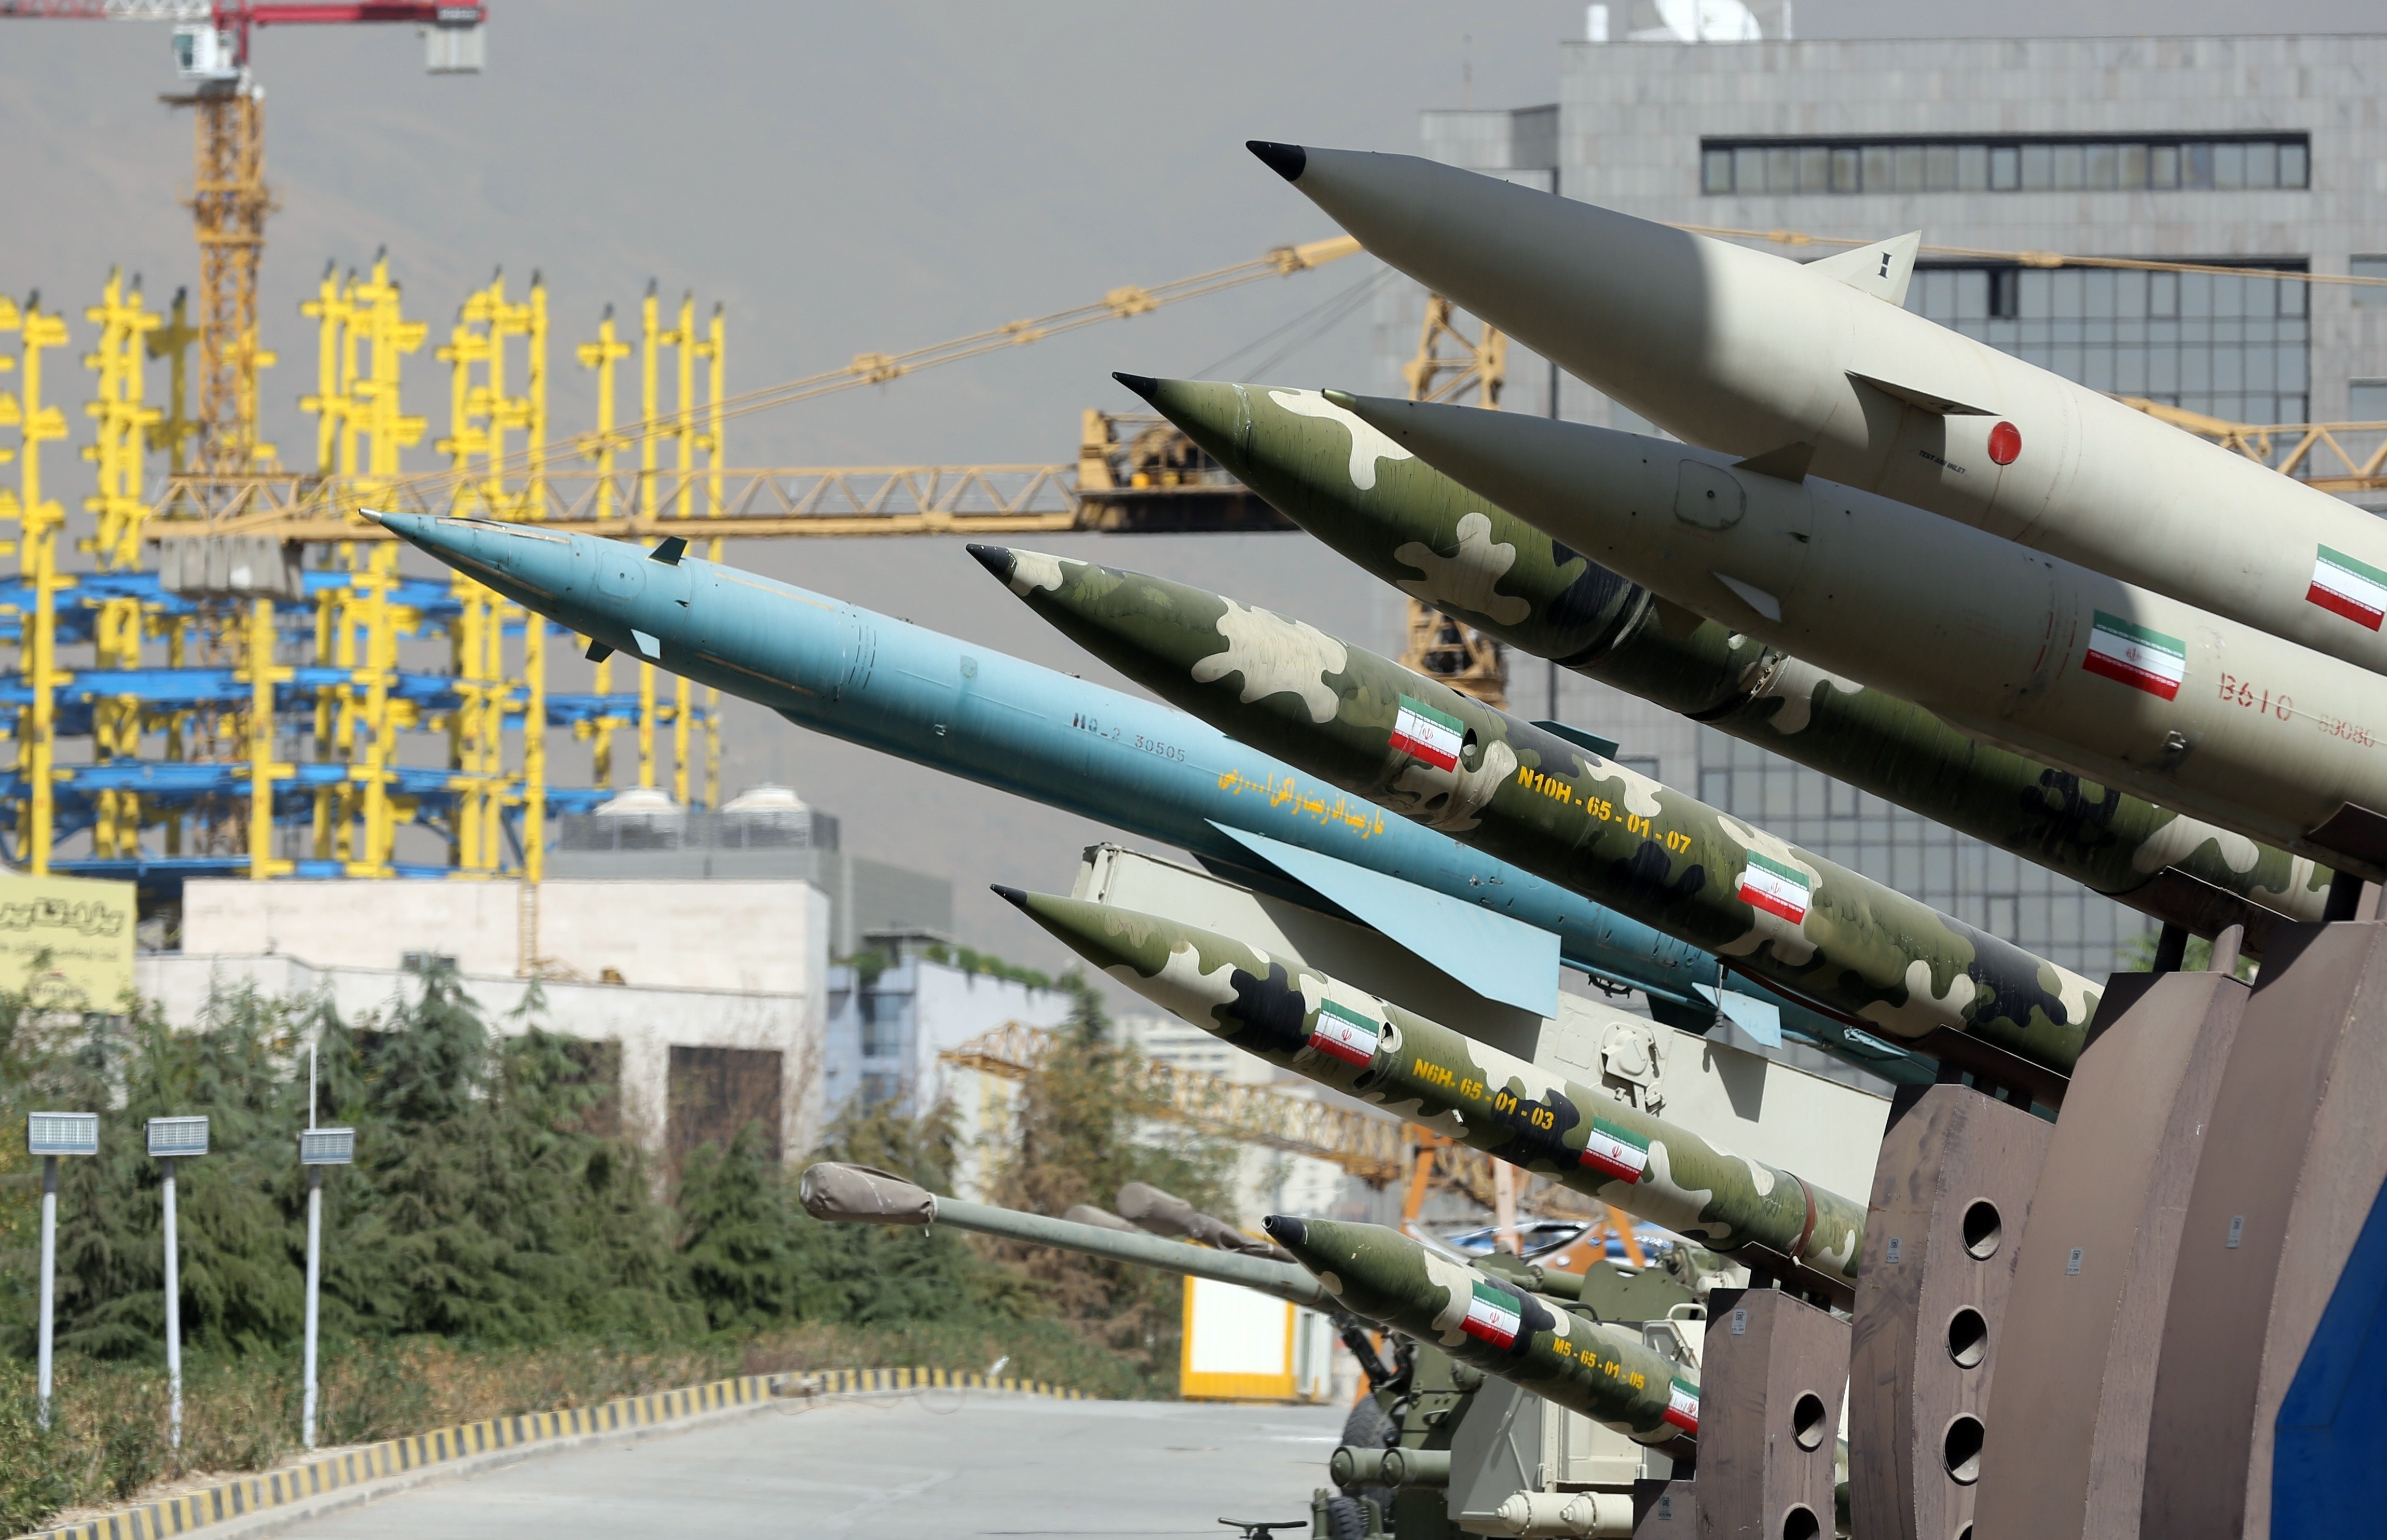 بعد رفع الحظر التسليحي.. ما هي الأسلحة التي ستشتريها إيران من الخارج؟

